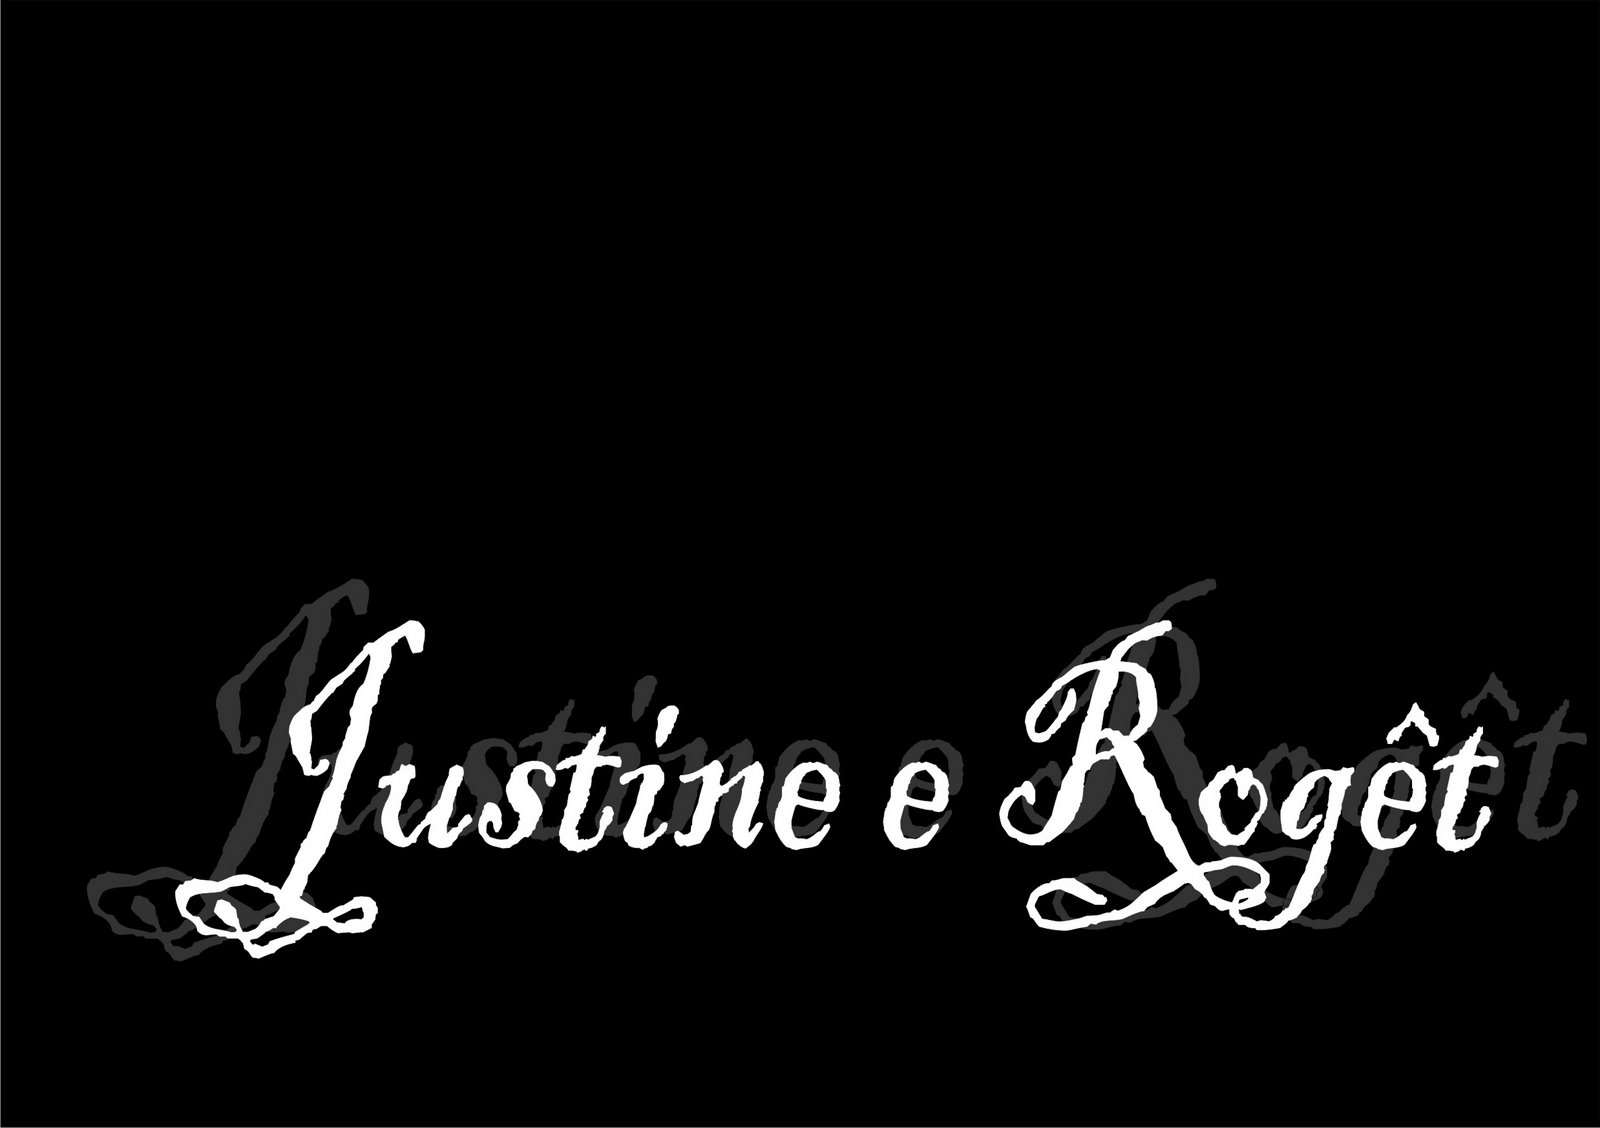 [Justine+e+RogÃªt.jpg]